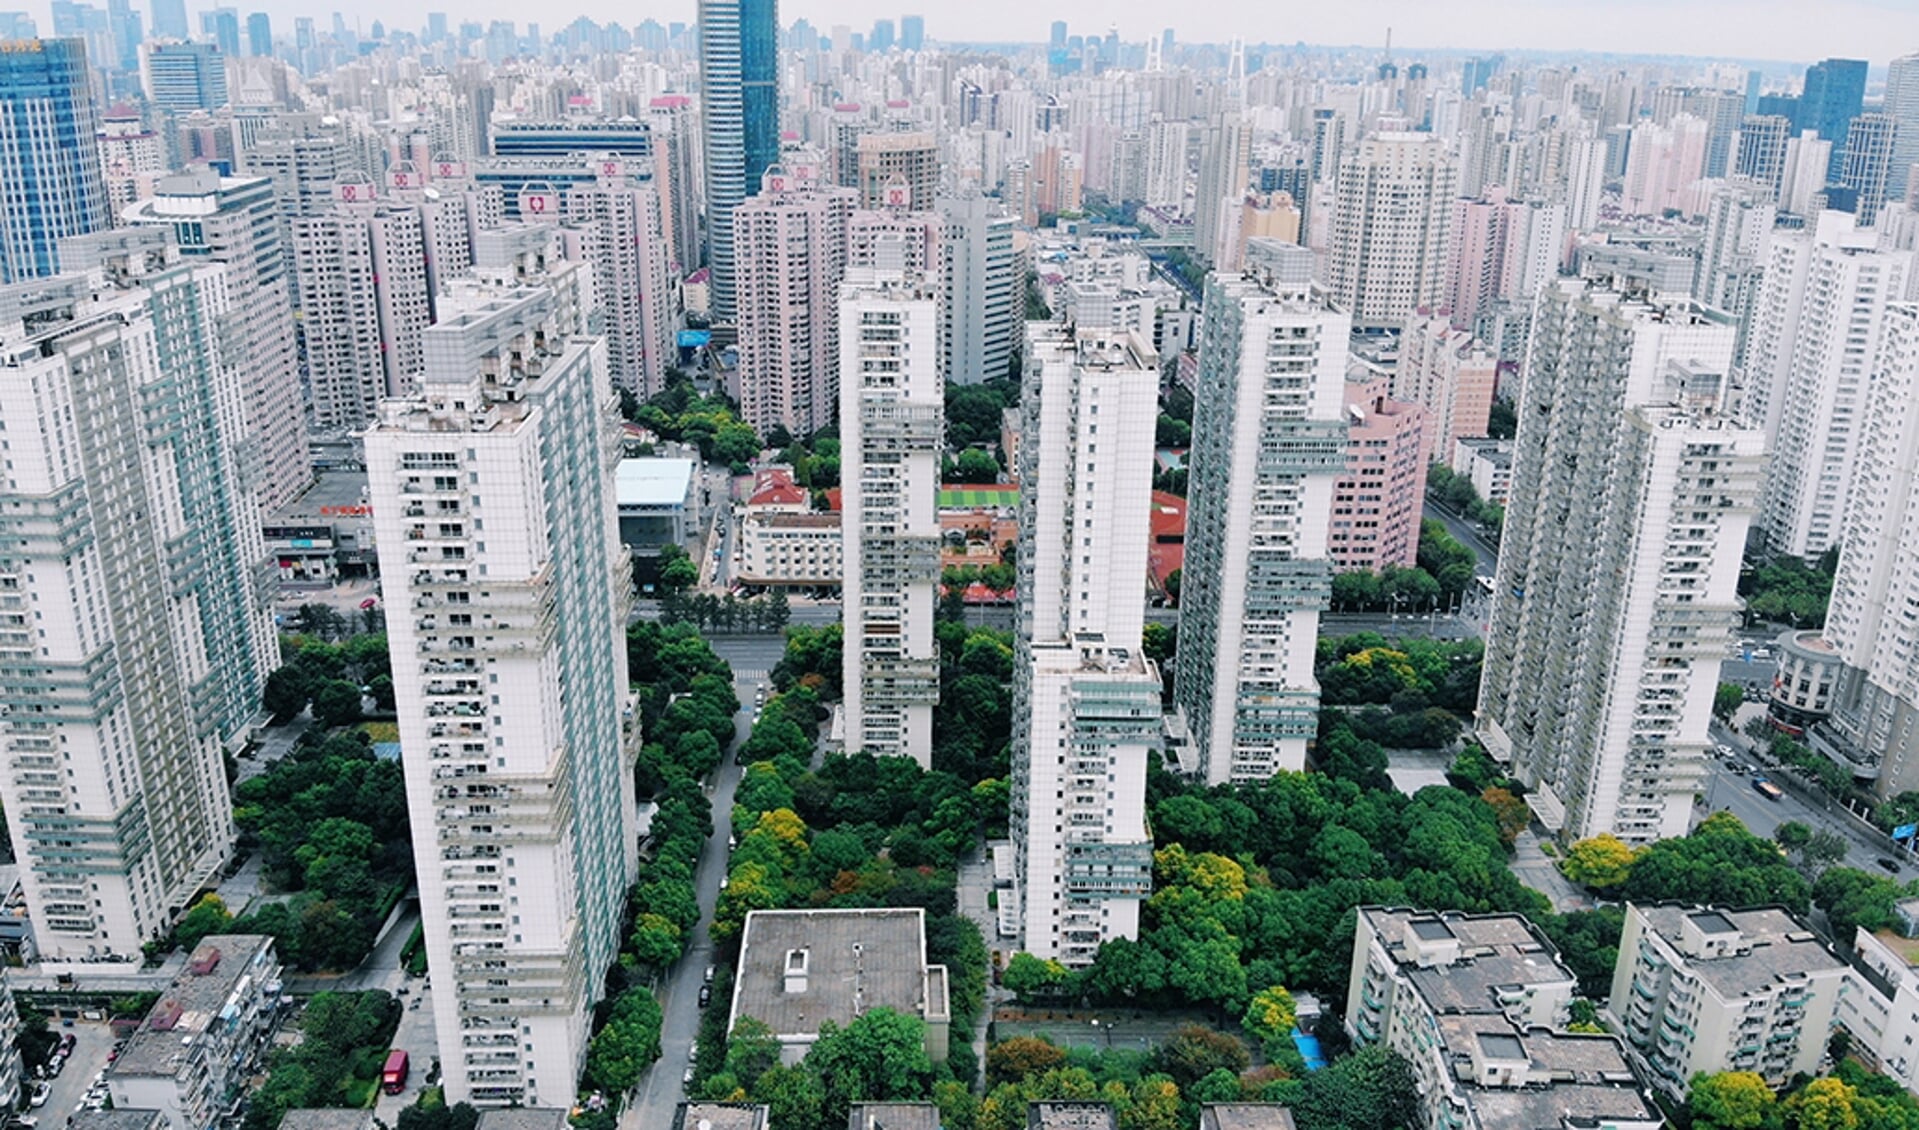 Suburbane huizen met tuinen bestaan niet in China